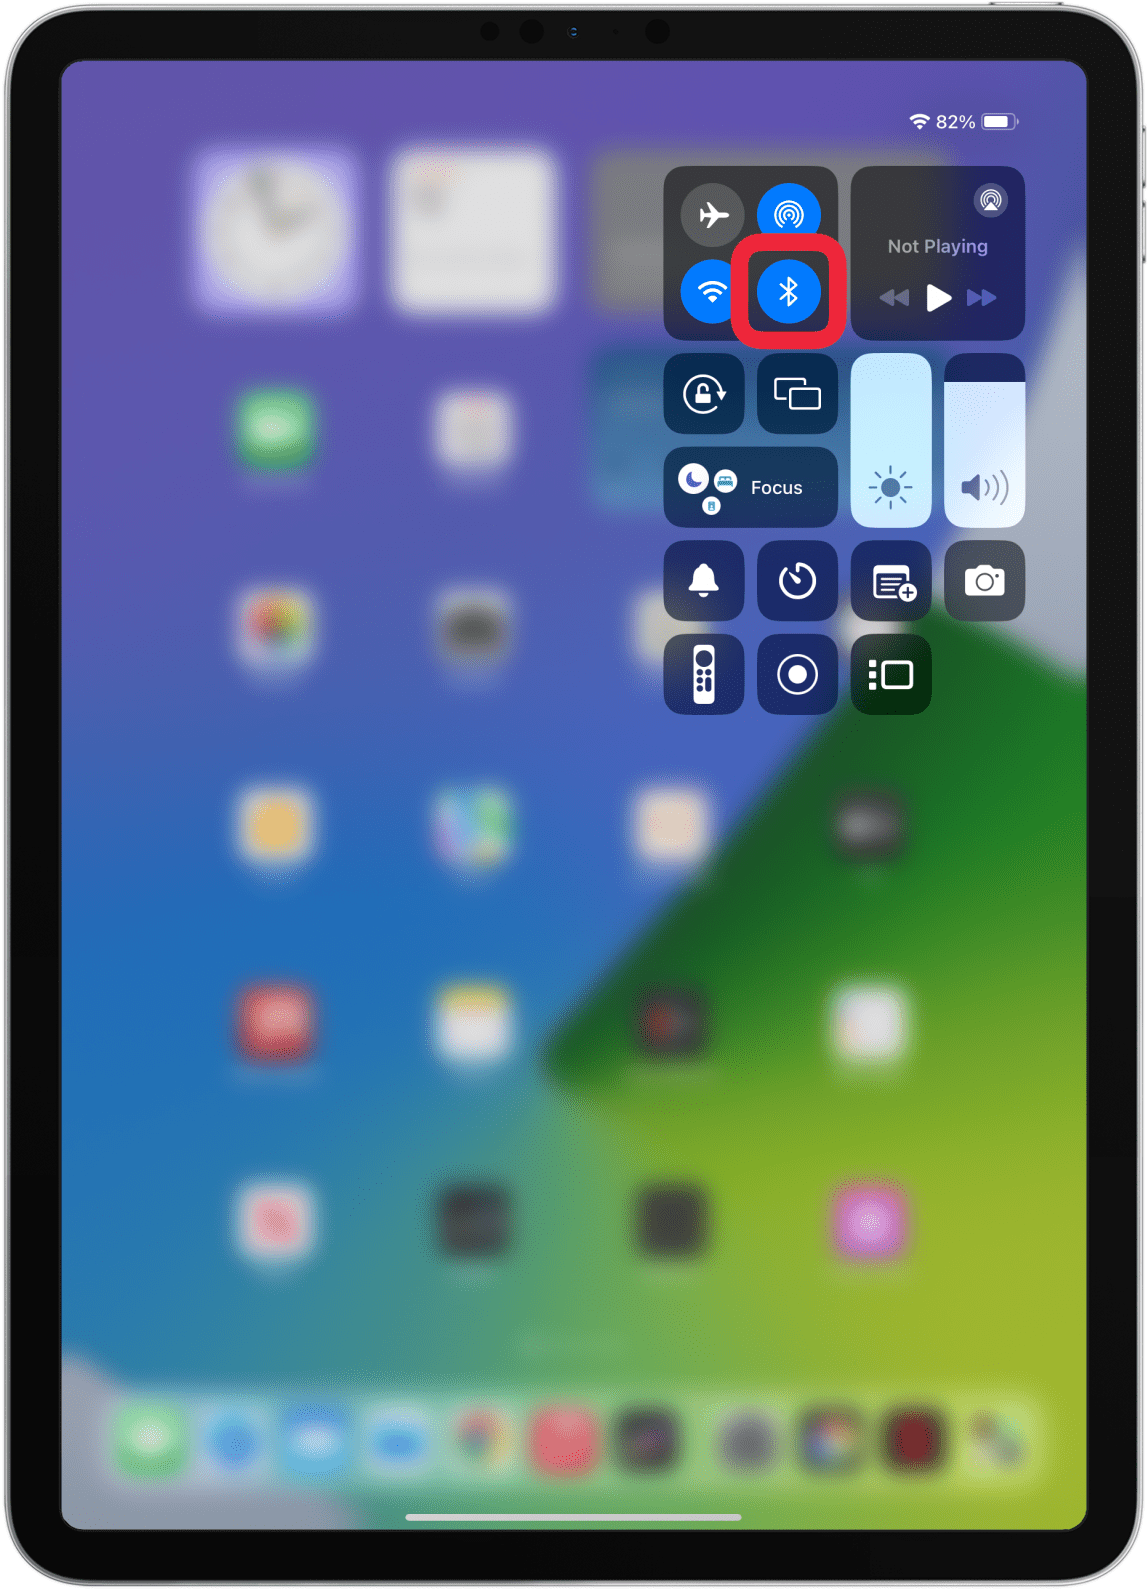 Si se trata de un teclado Bluetooth, asegúrese de que el Bluetooth esté habilitado en su iPad.